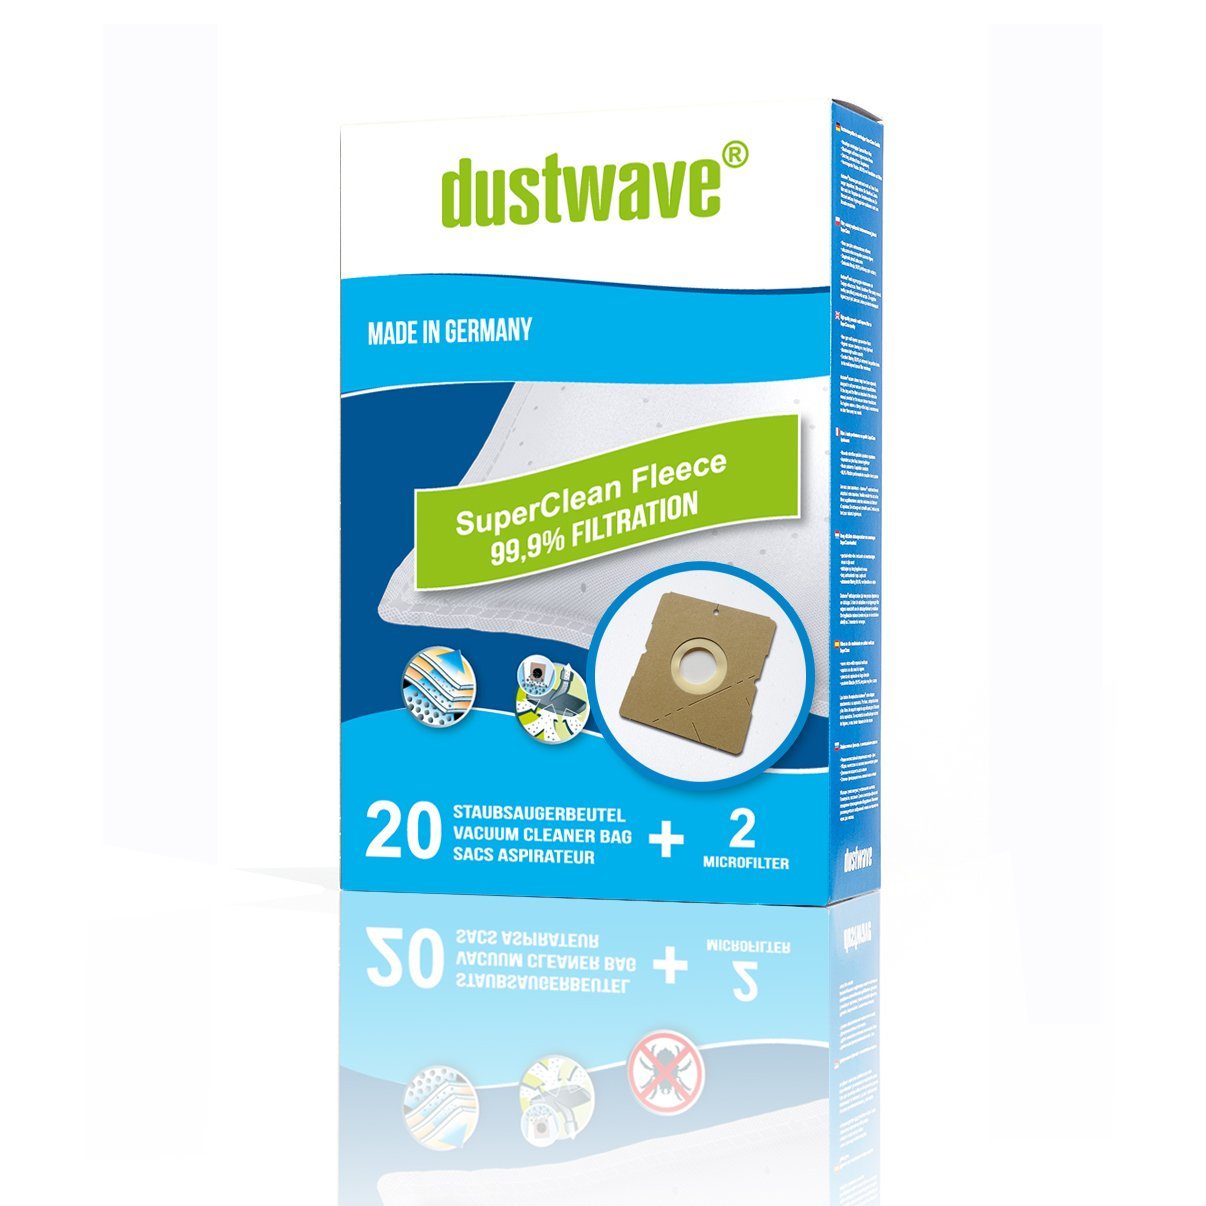 Dustwave Staubsaugerbeutel Megapack, passend für Adix DIV 380, 20 St., Megapack, 20 Staubsaugerbeutel + 2 Hepa-Filter (ca. 15x15cm - zuschneidbar)